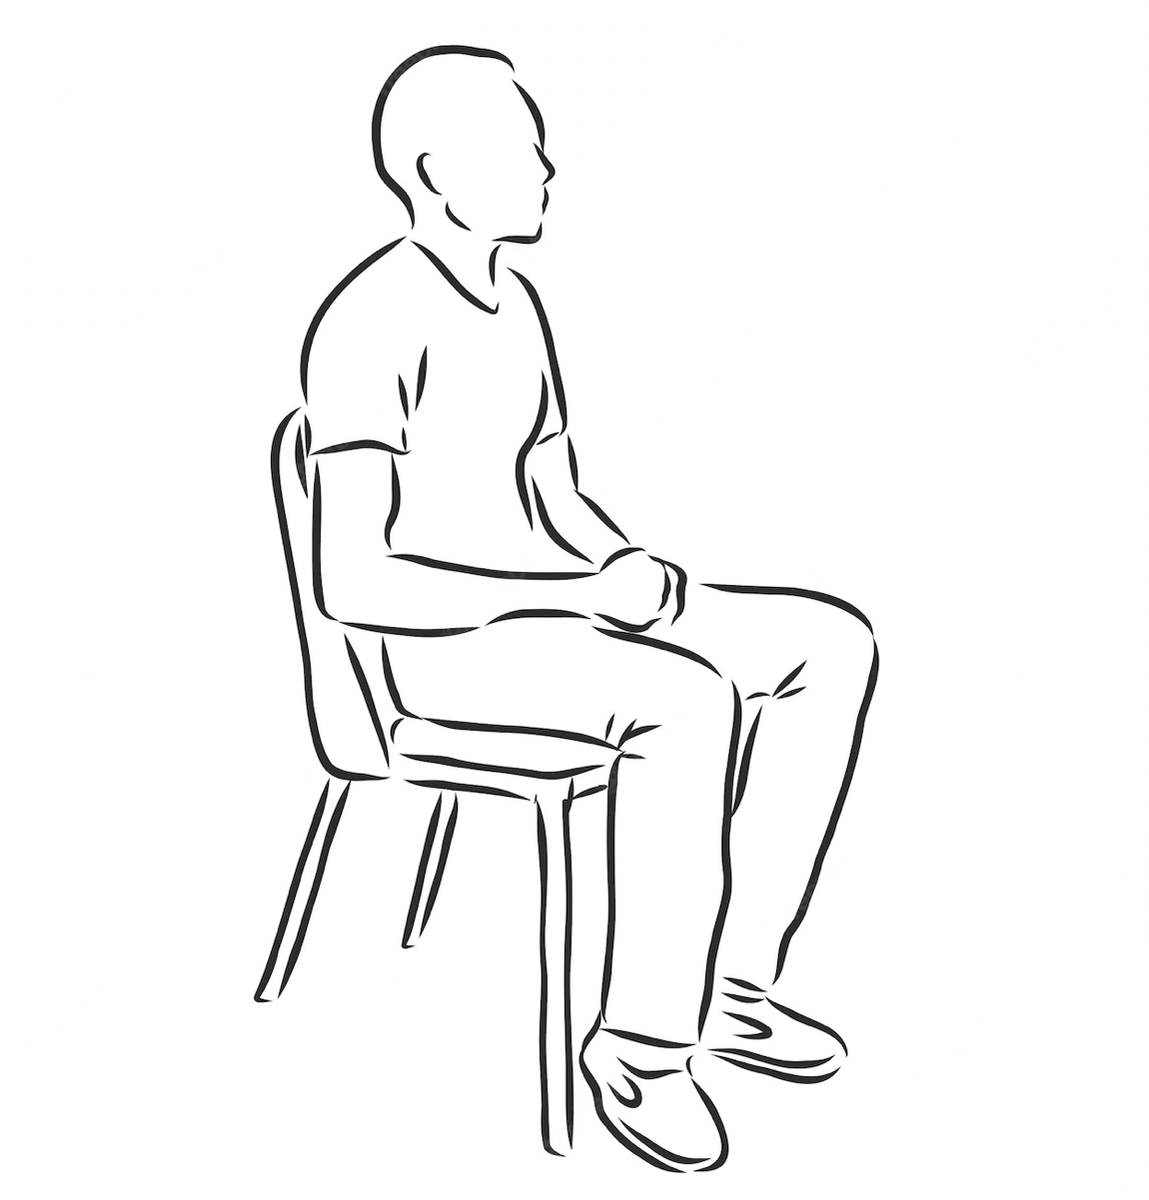 Наброски людей сидя. Сидящий человек рисунок. Человек сидит на стуле. Человек сидит картинка.